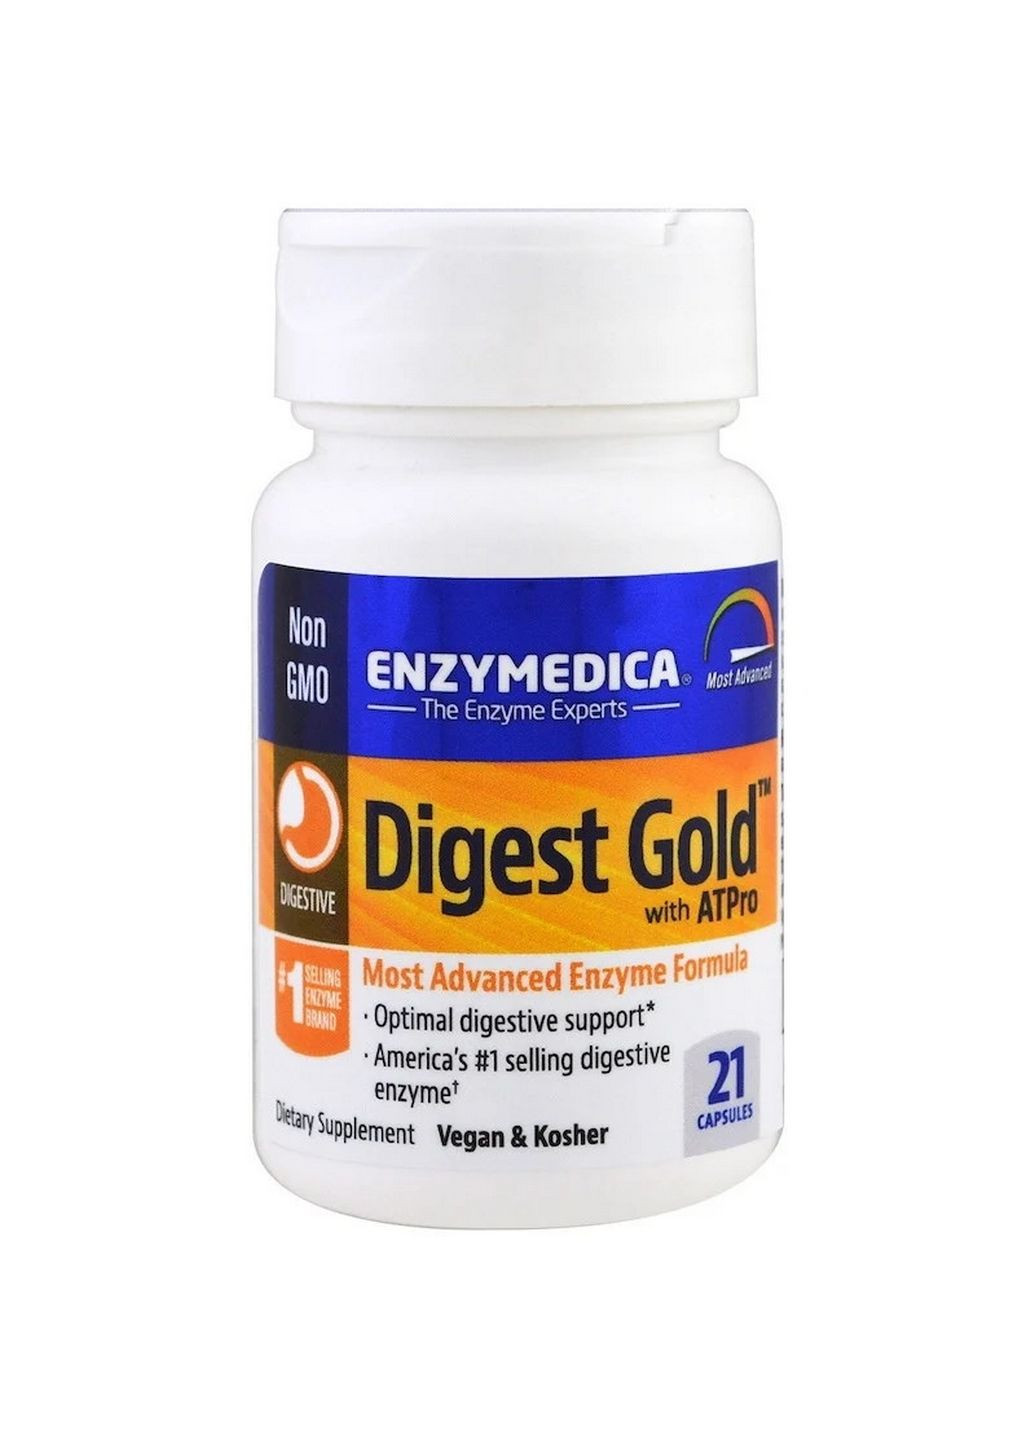 Натуральная добавка Digest Gold, 21 капсула Enzymedica (293421001)